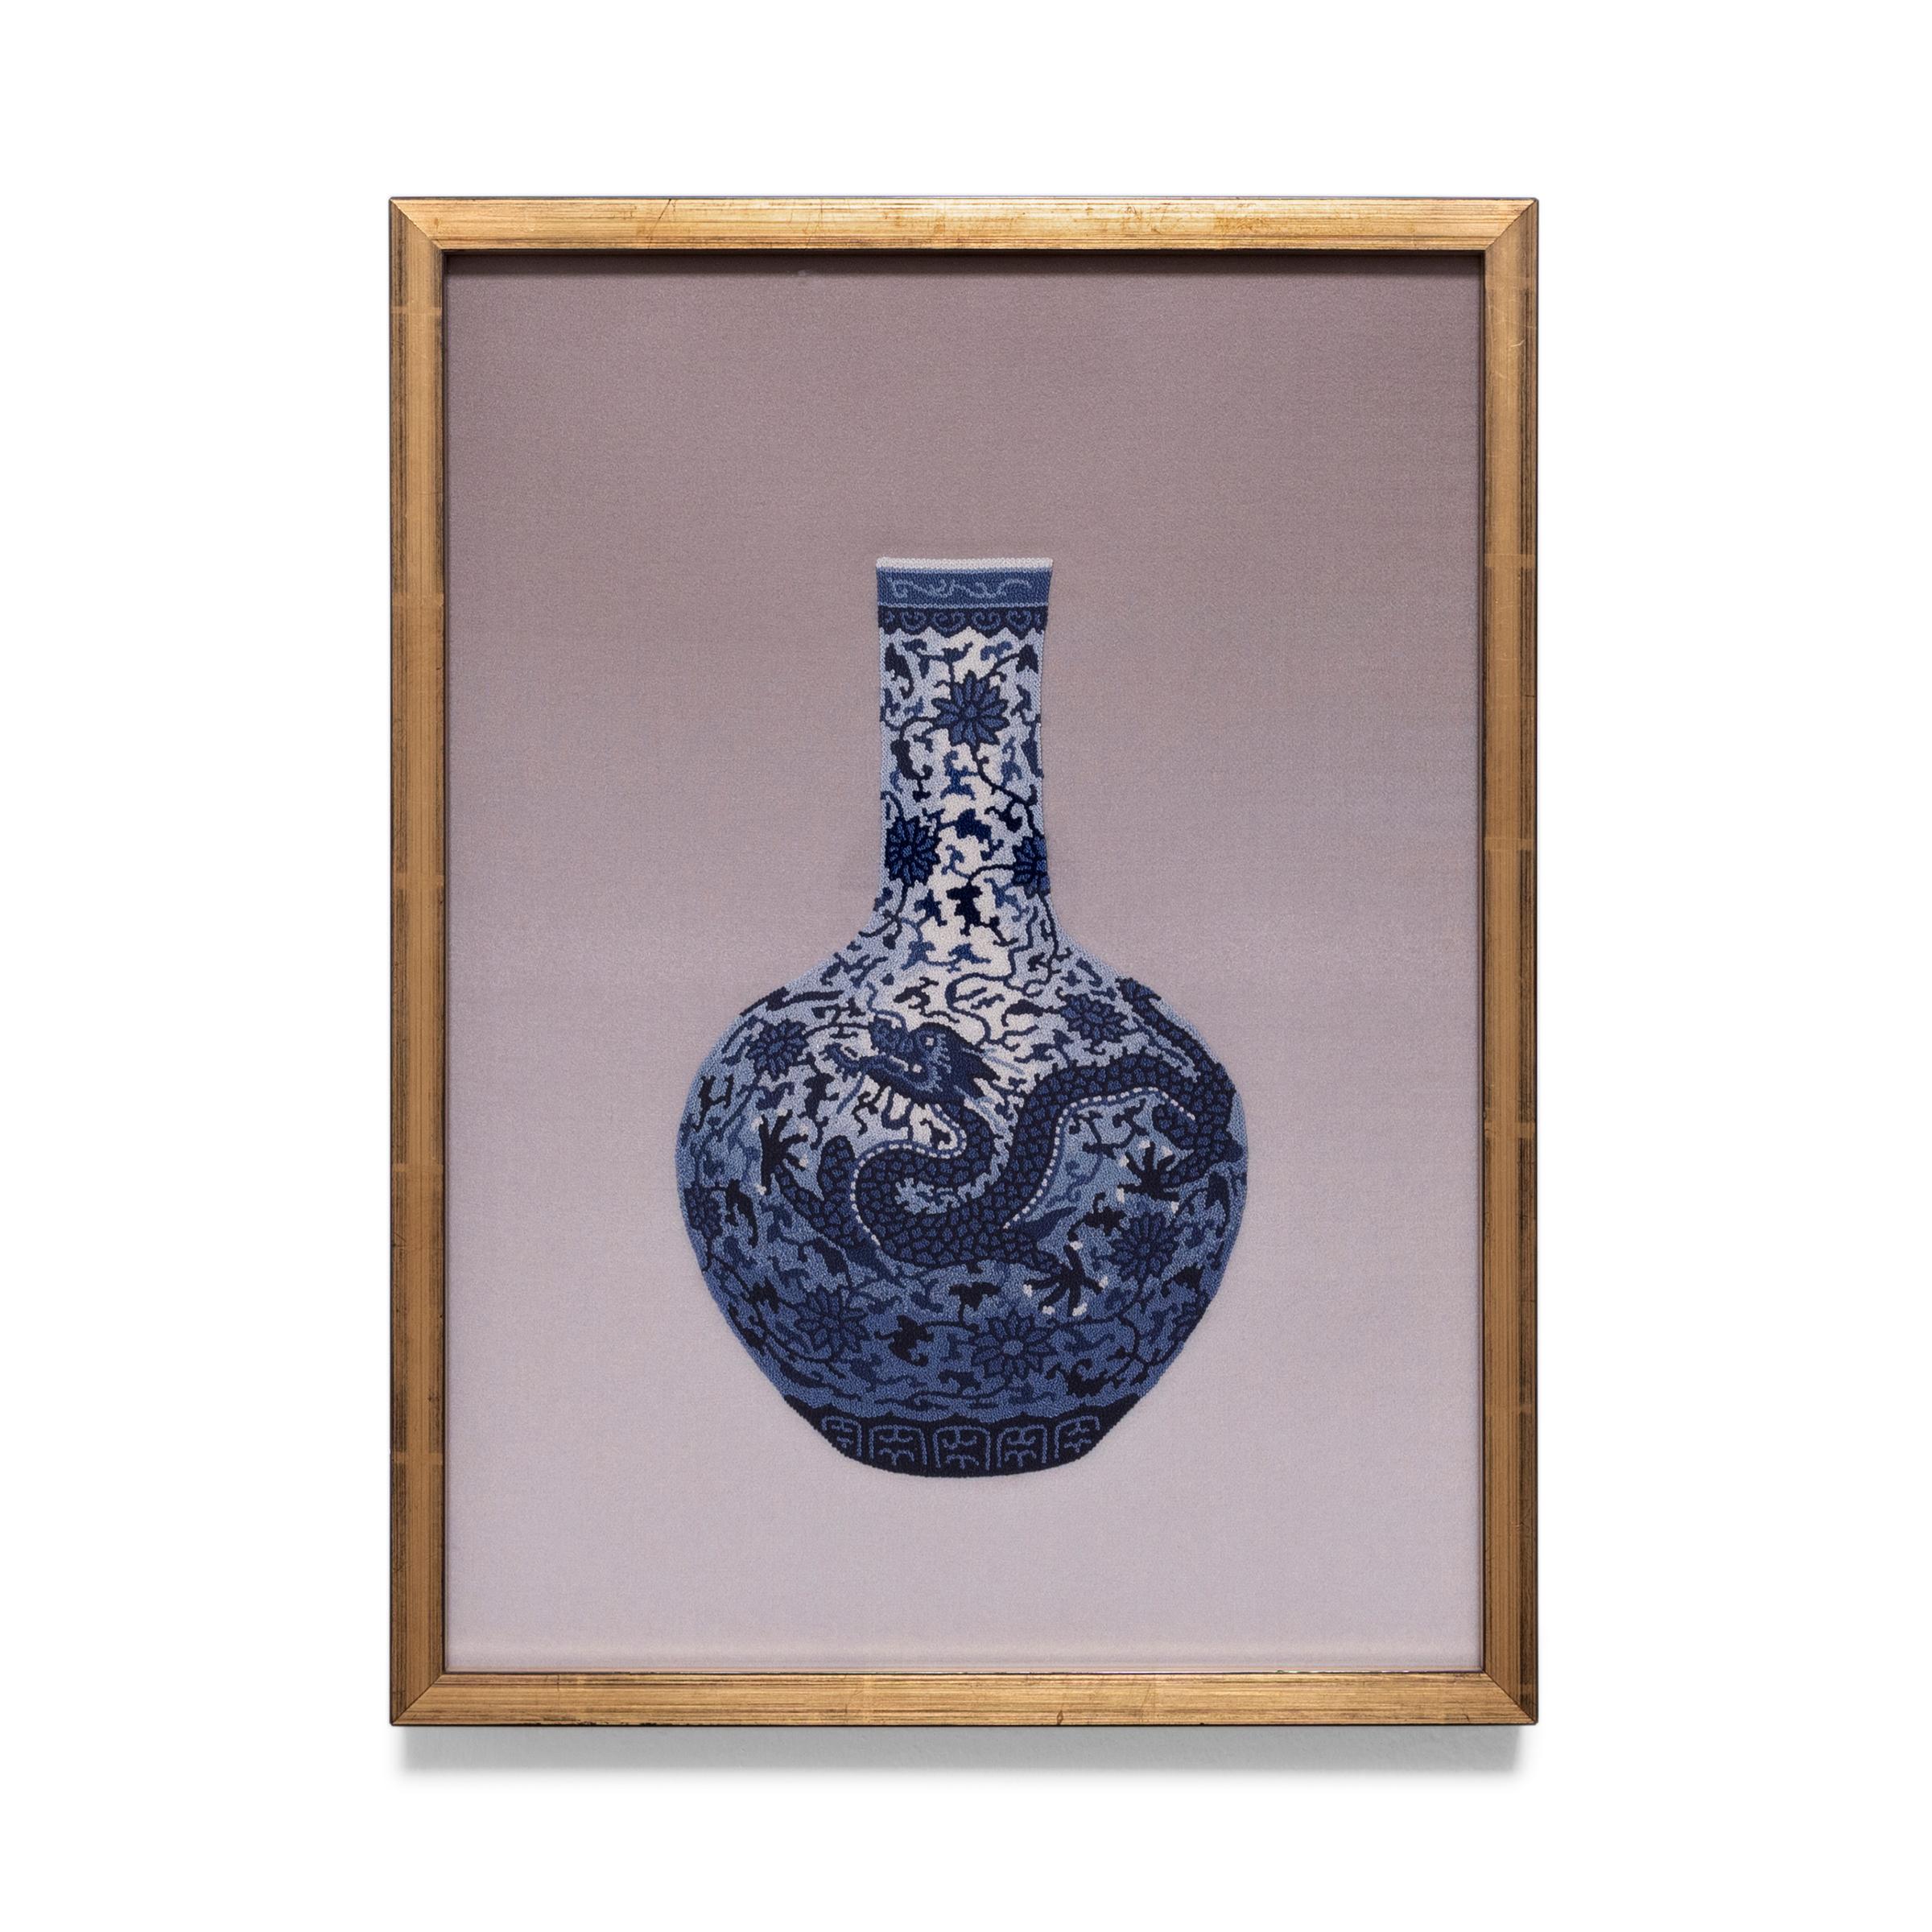 Vase chinois brodé de points forgés d'une broderie bleue et blanche - Mixed Media Art de Unknown